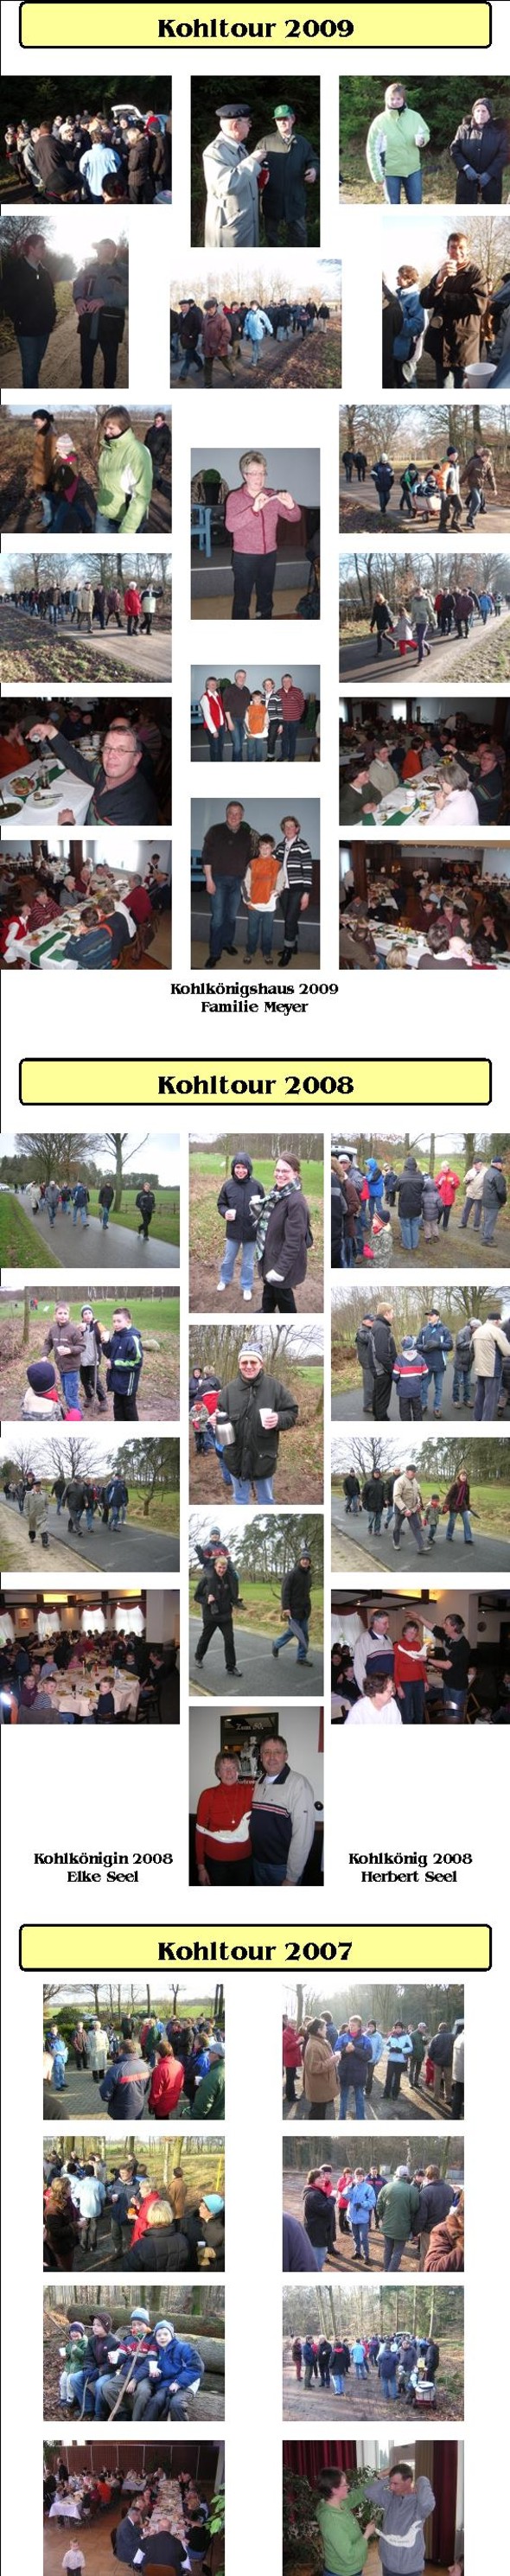 Kohltour2007-2009-591